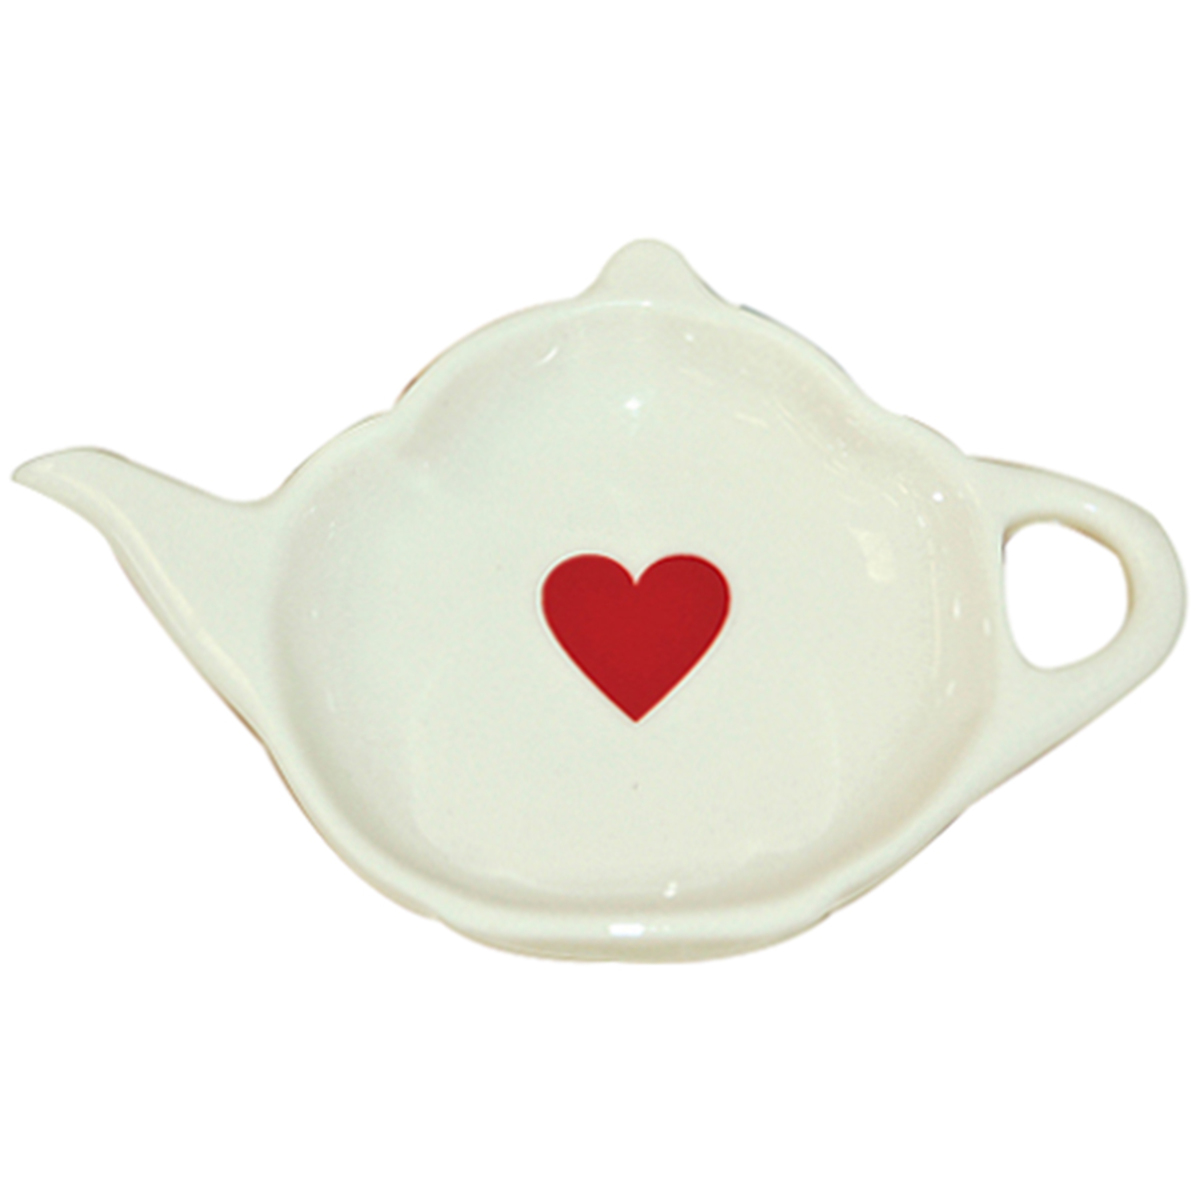 Repose sachet de thé en faience décoré avec un coeur